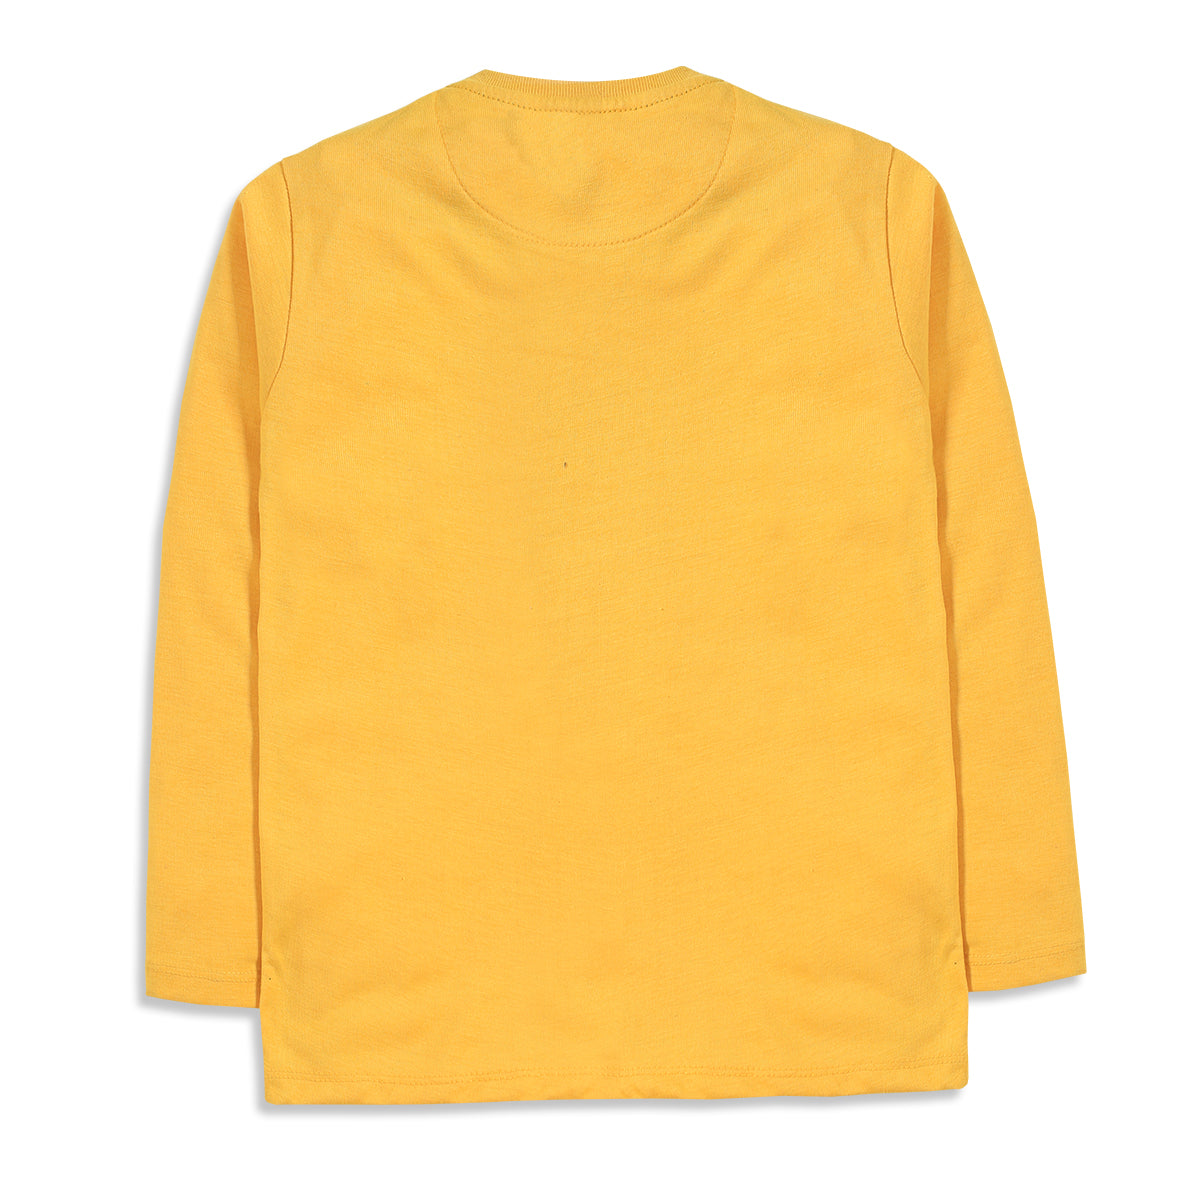 Jurassic Yellow Full Sleeve T-Shirt